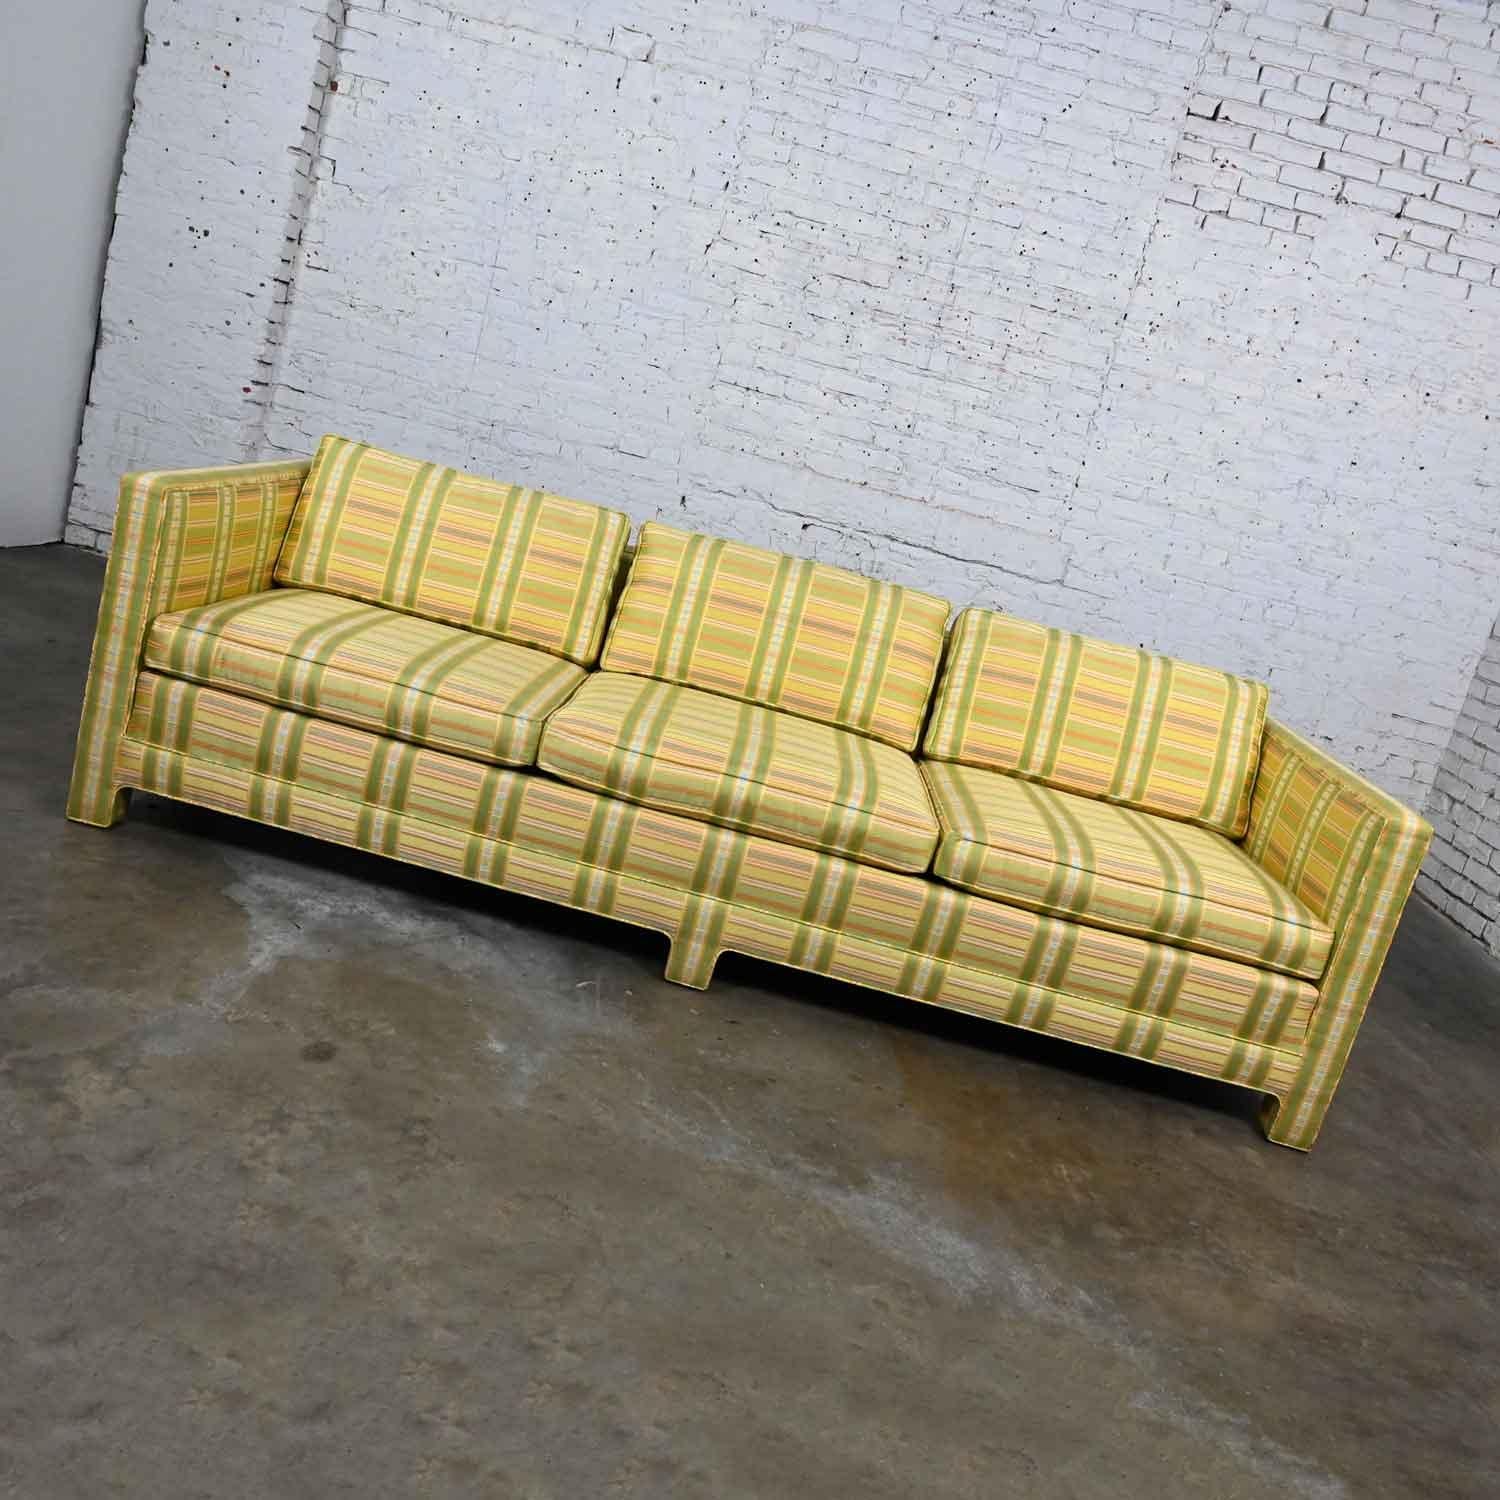 Wunderschönes Mid-Century Modern (a.k.a. MCM) bis modernes Smoking-Sofa von Henredon, bestehend aus einem vollständig gepolsterten Rahmen mit drei losen Sitz- und drei losen Rückenkissen in den Originalfarben Gelb und Chartreuse mit einem Hauch von